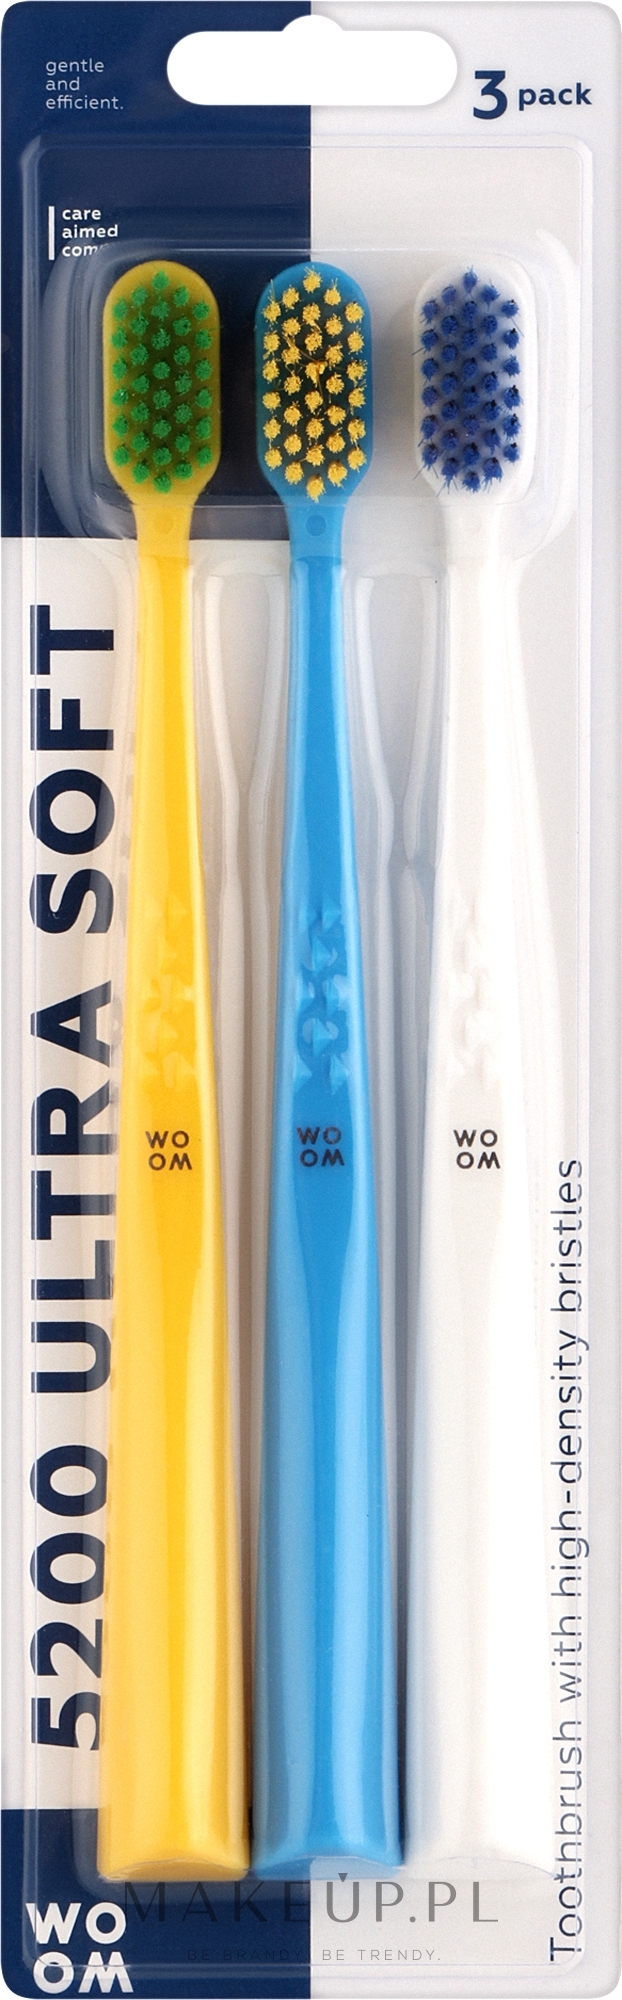 Zestaw szczoteczek do zębów, ultramiękkie, żółte, niebieskie, białe - Woom 5200 Ultra Soft Toothbrush — Zdjęcie 3 szt.